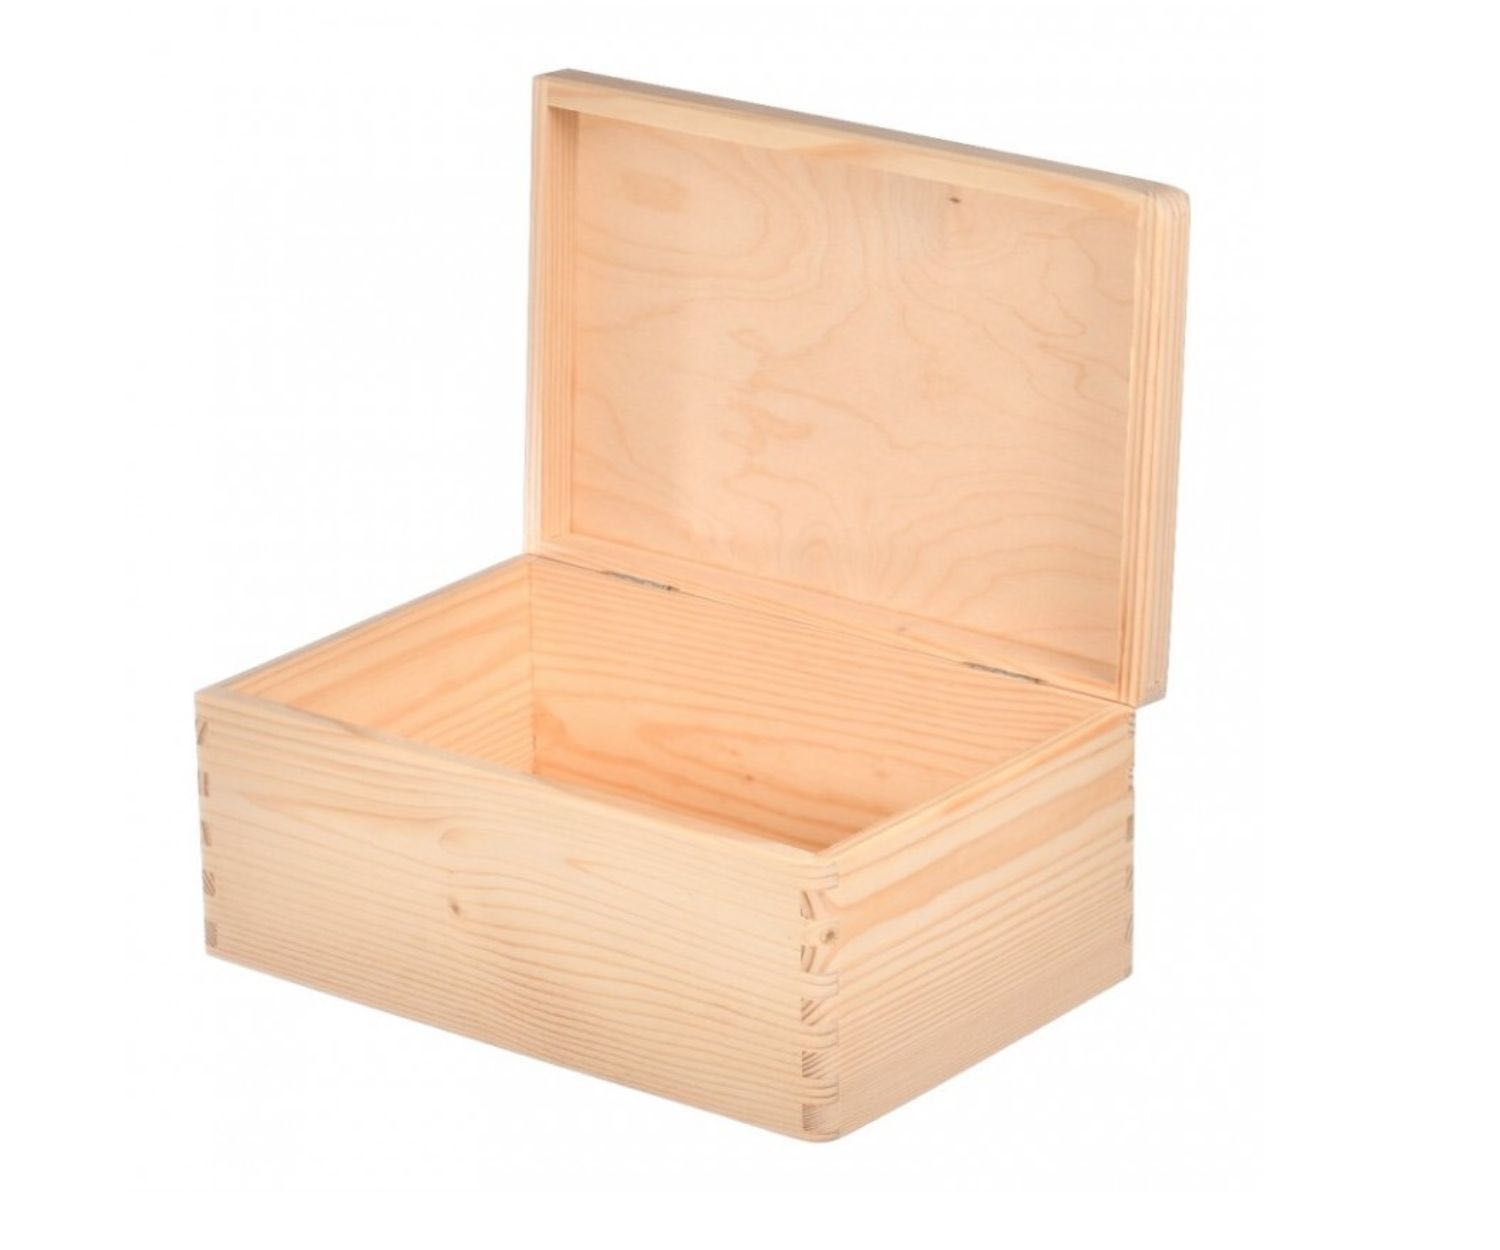 Skrzynka 30x20x13 cm | Małe pudełko drewniane | Organizer